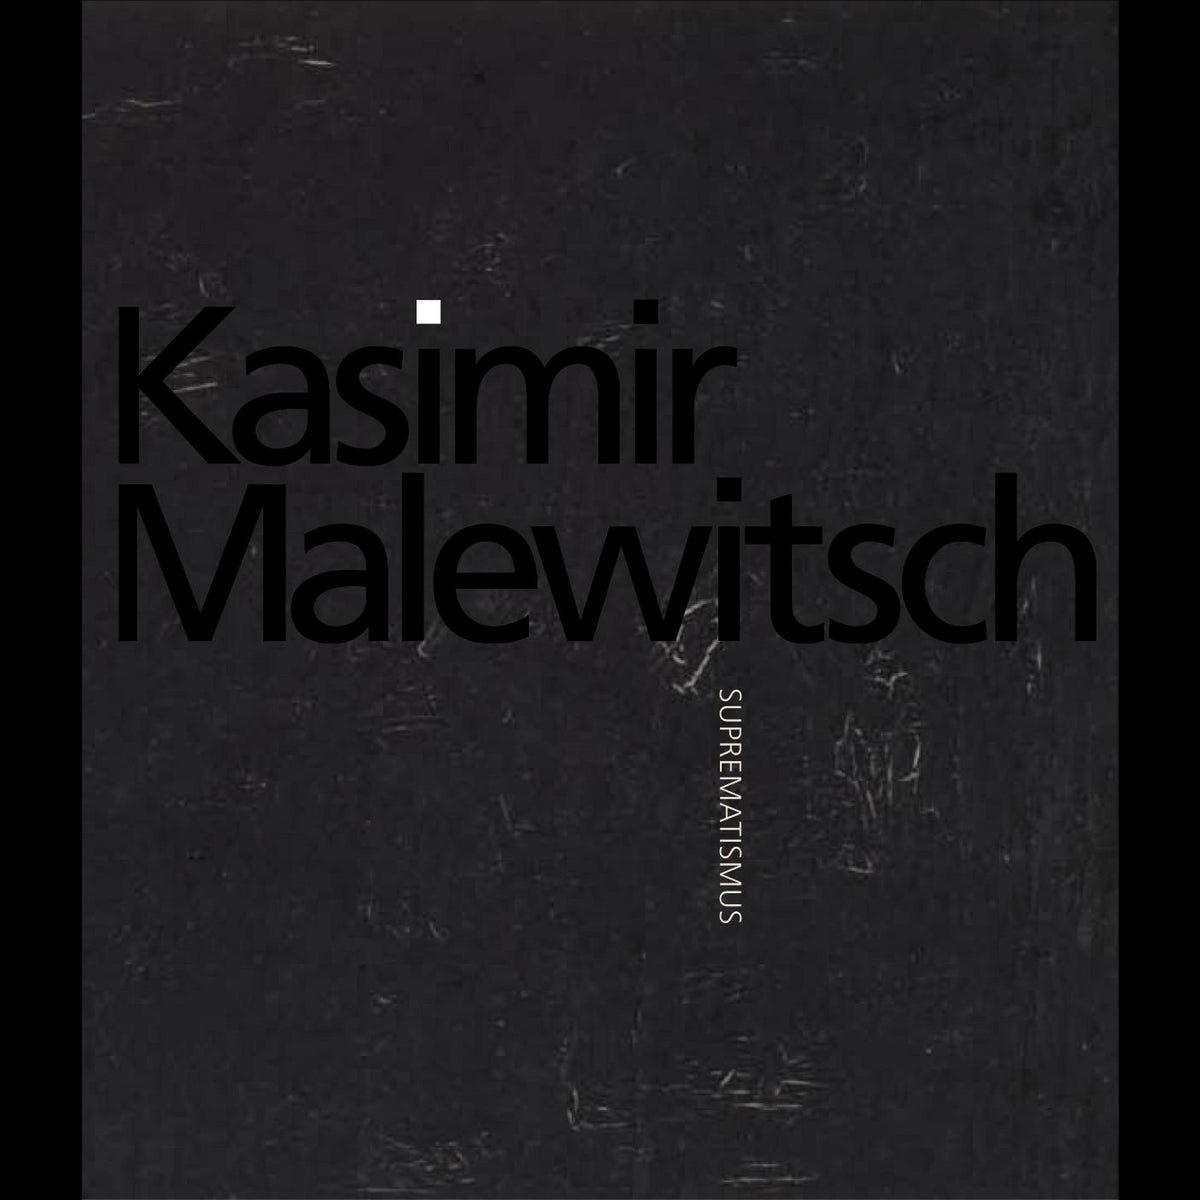 Coverbild Kasimir Malewitsch